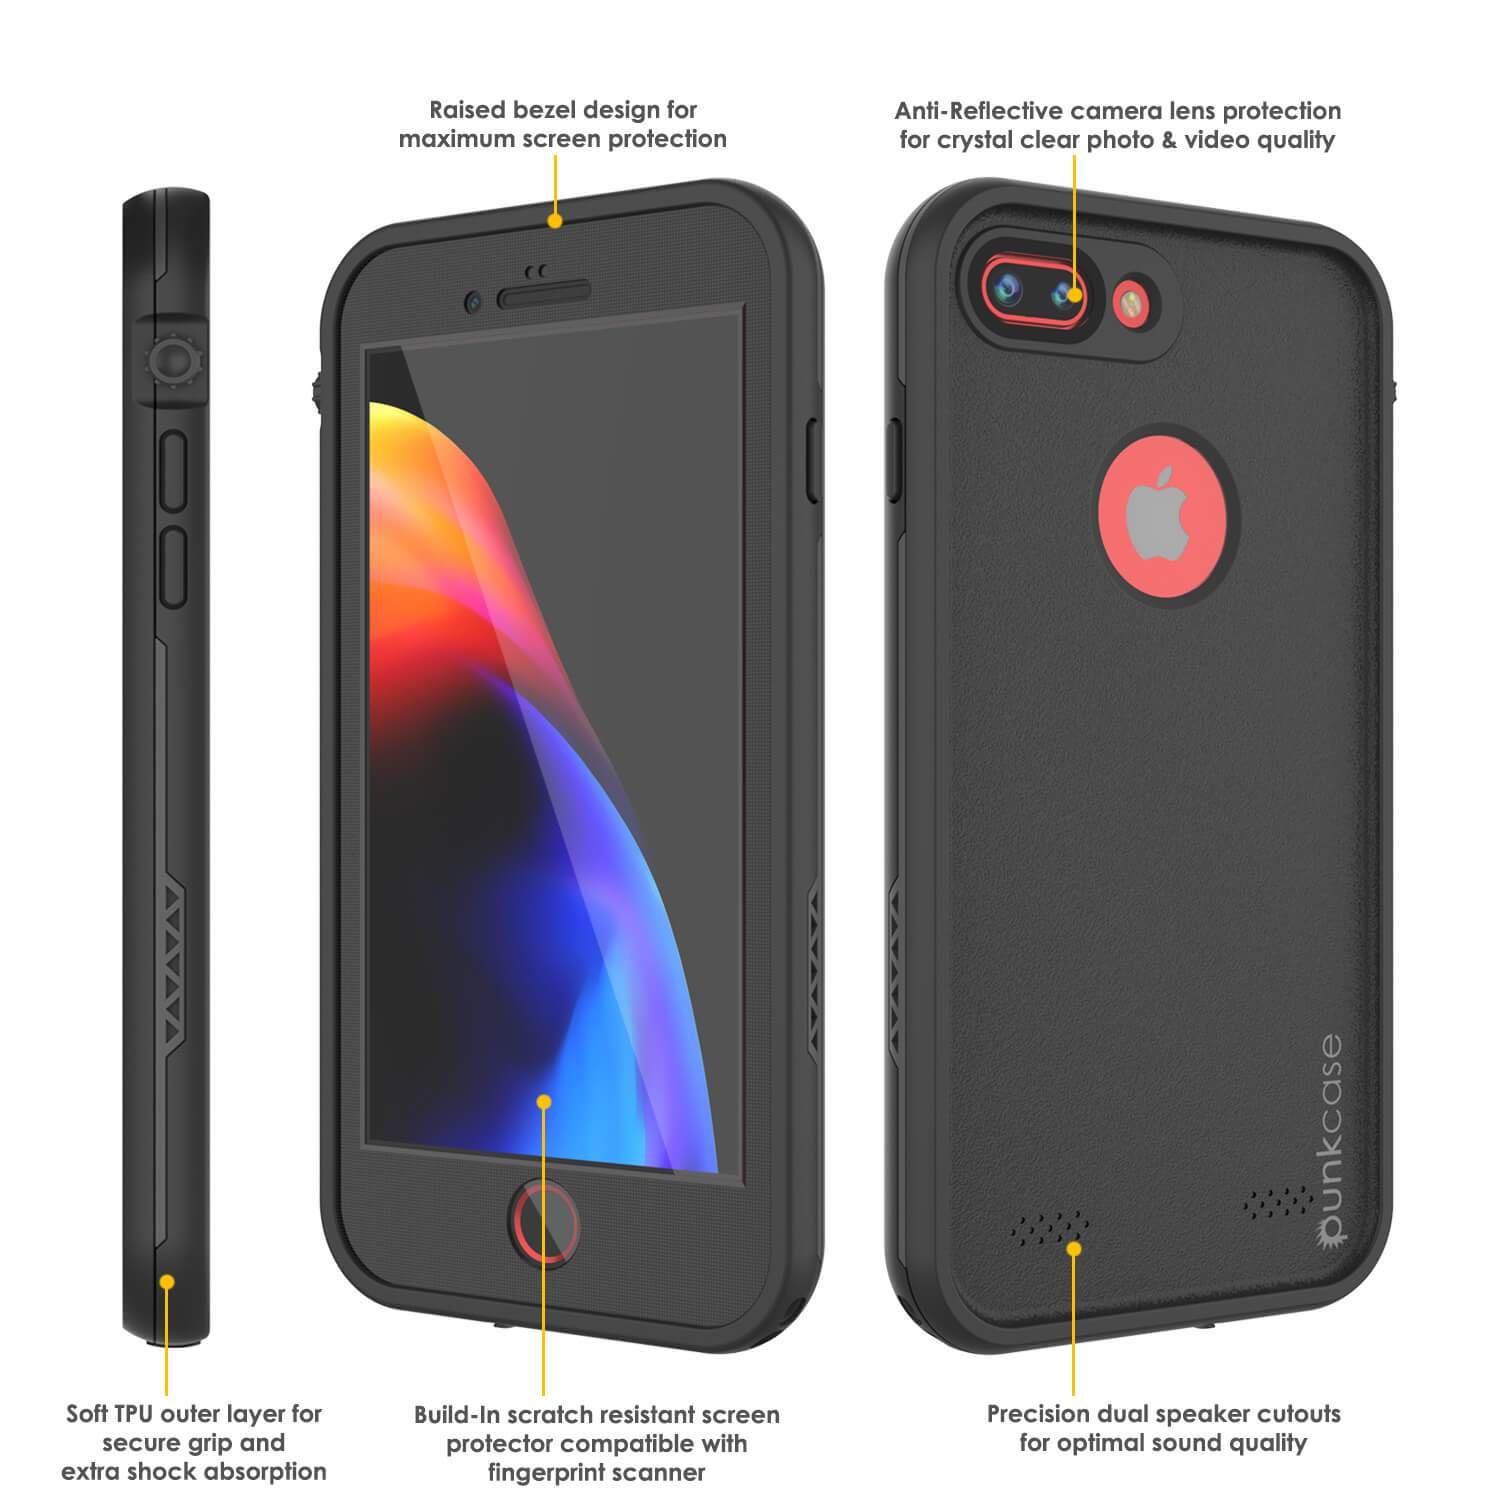 iPhone 8+ Plus Waterproof Case, Punkcase SpikeStar Series [Black]